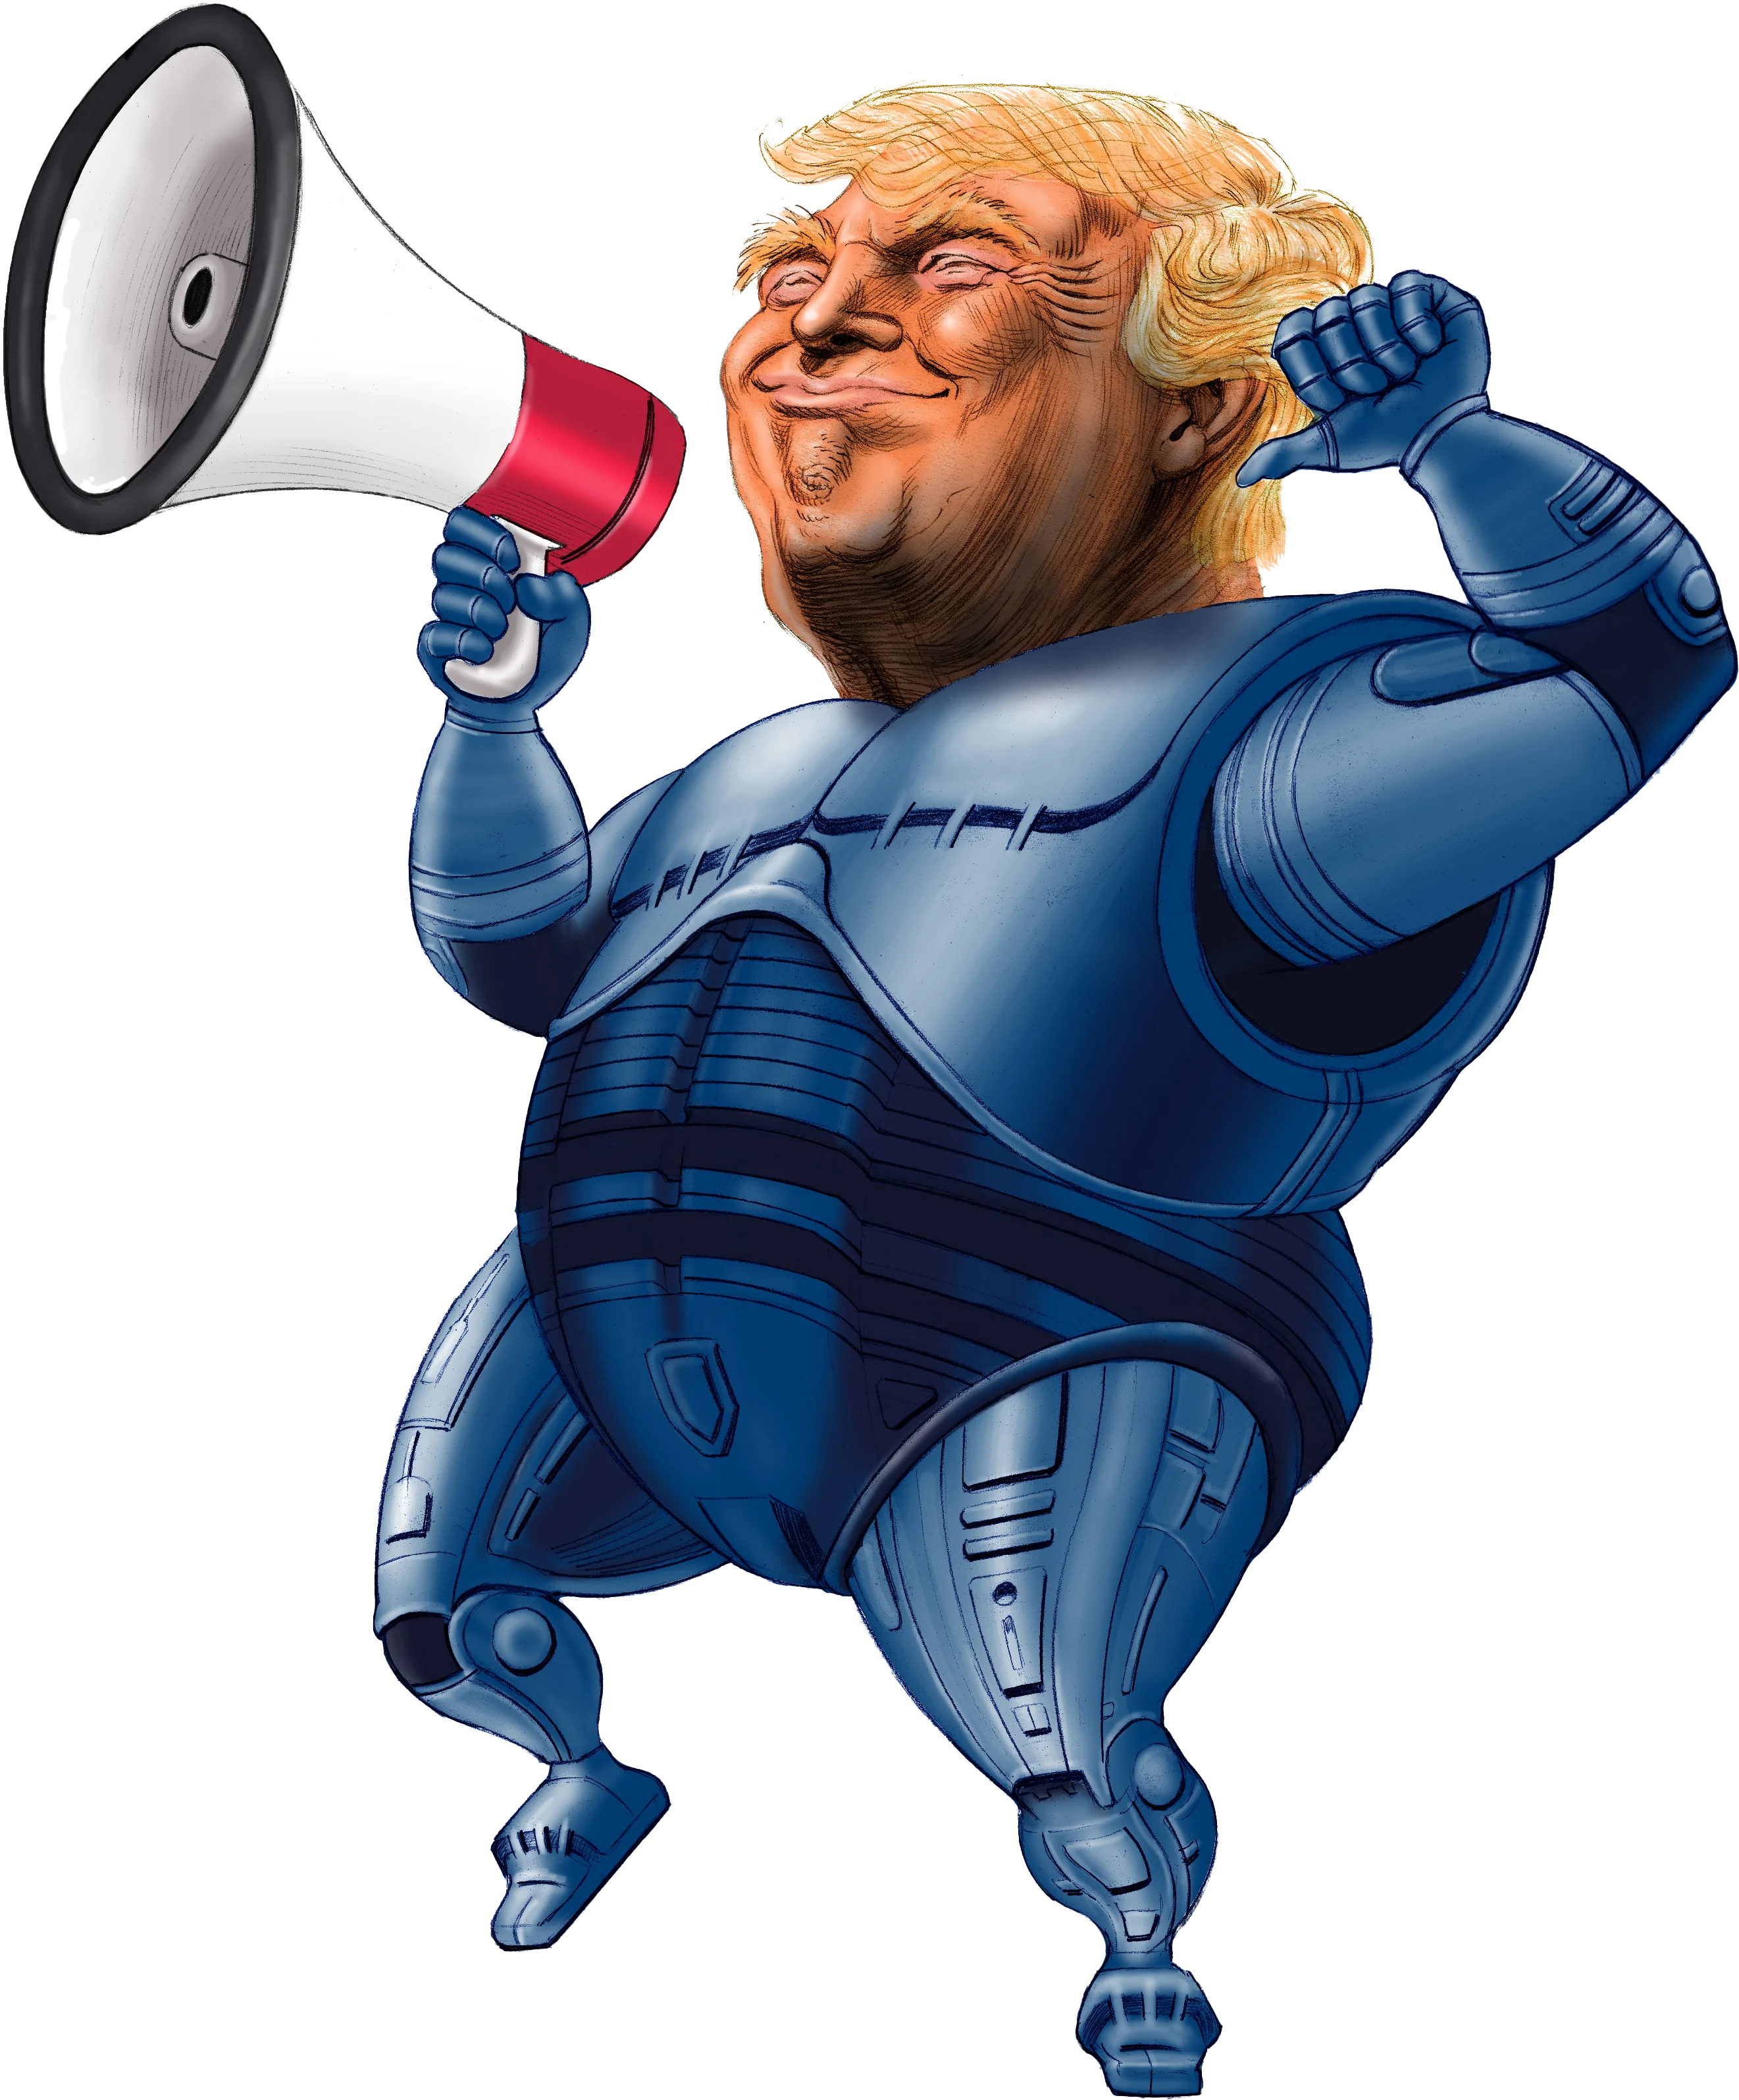 Trump with a megaphones